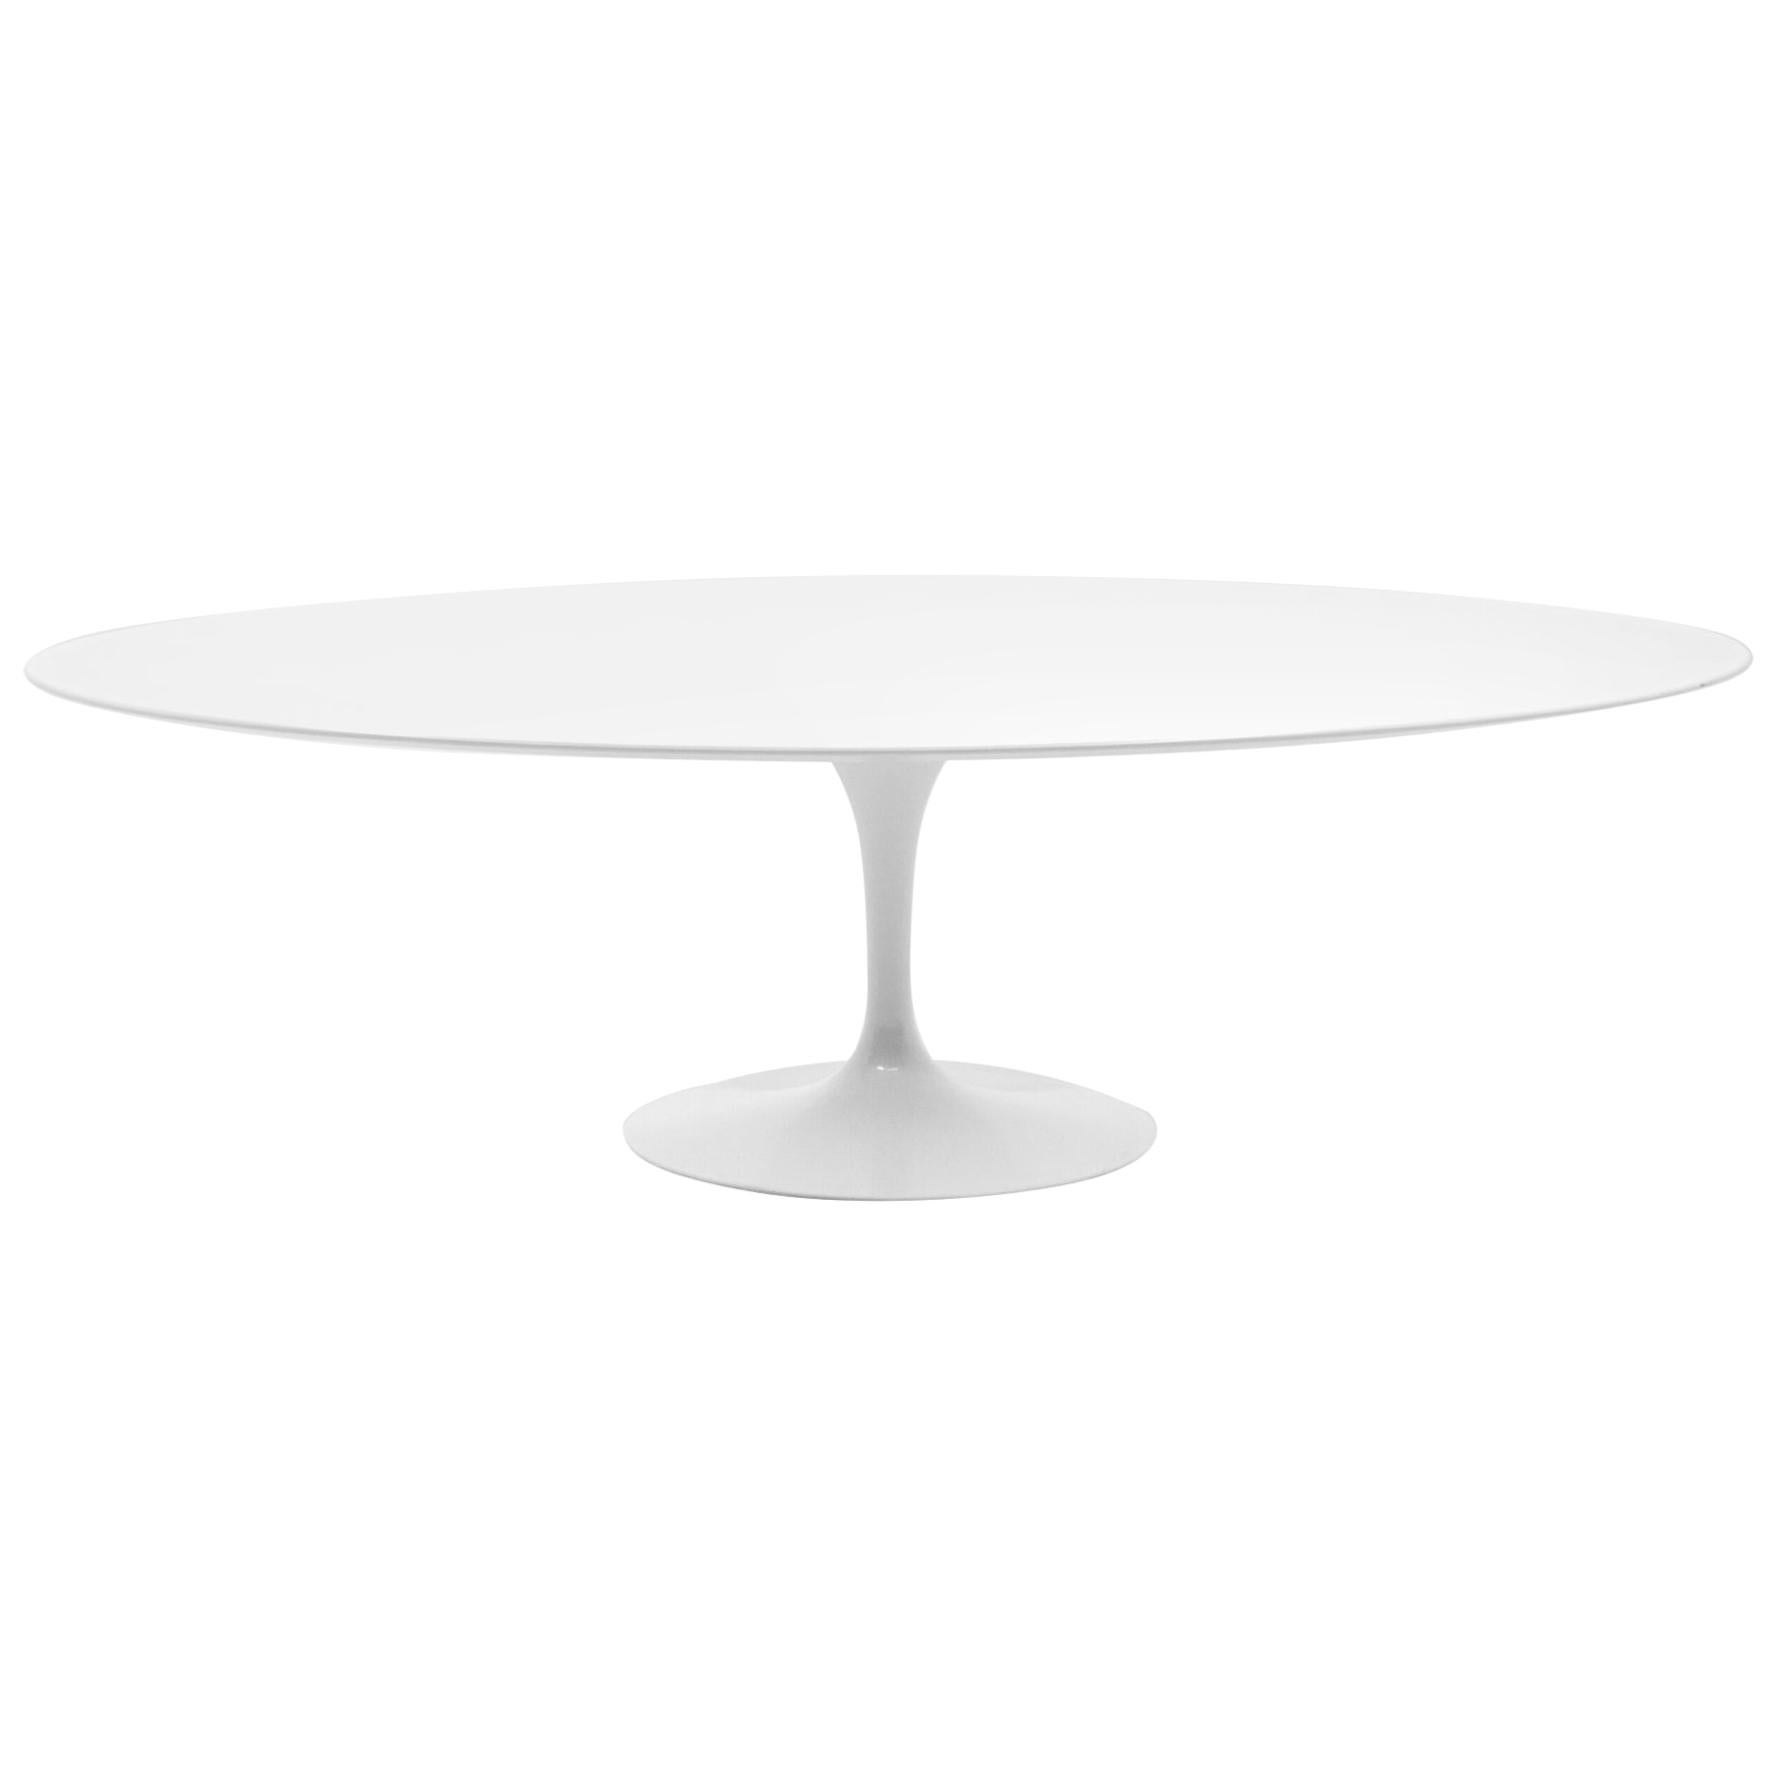 Eero Saarinen Oval Tulip Base Dining Table, White Laminate Top